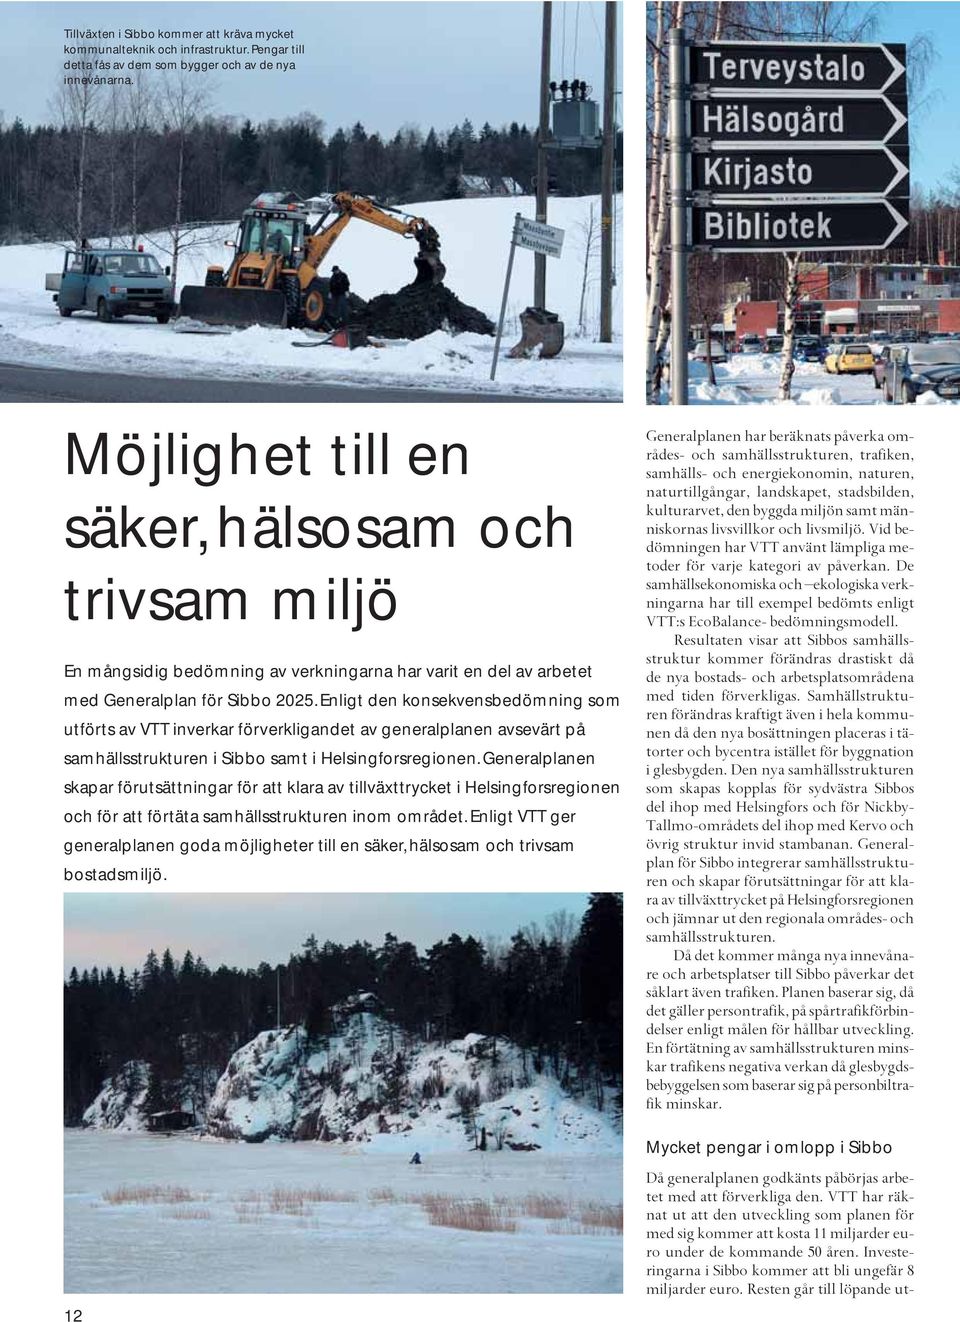 Enligt den konsekvensbedömning som utförts av VTT inverkar förverkligandet av generalplanen avsevärt på samhällsstrukturen i Sibbo samt i Helsingforsregionen.